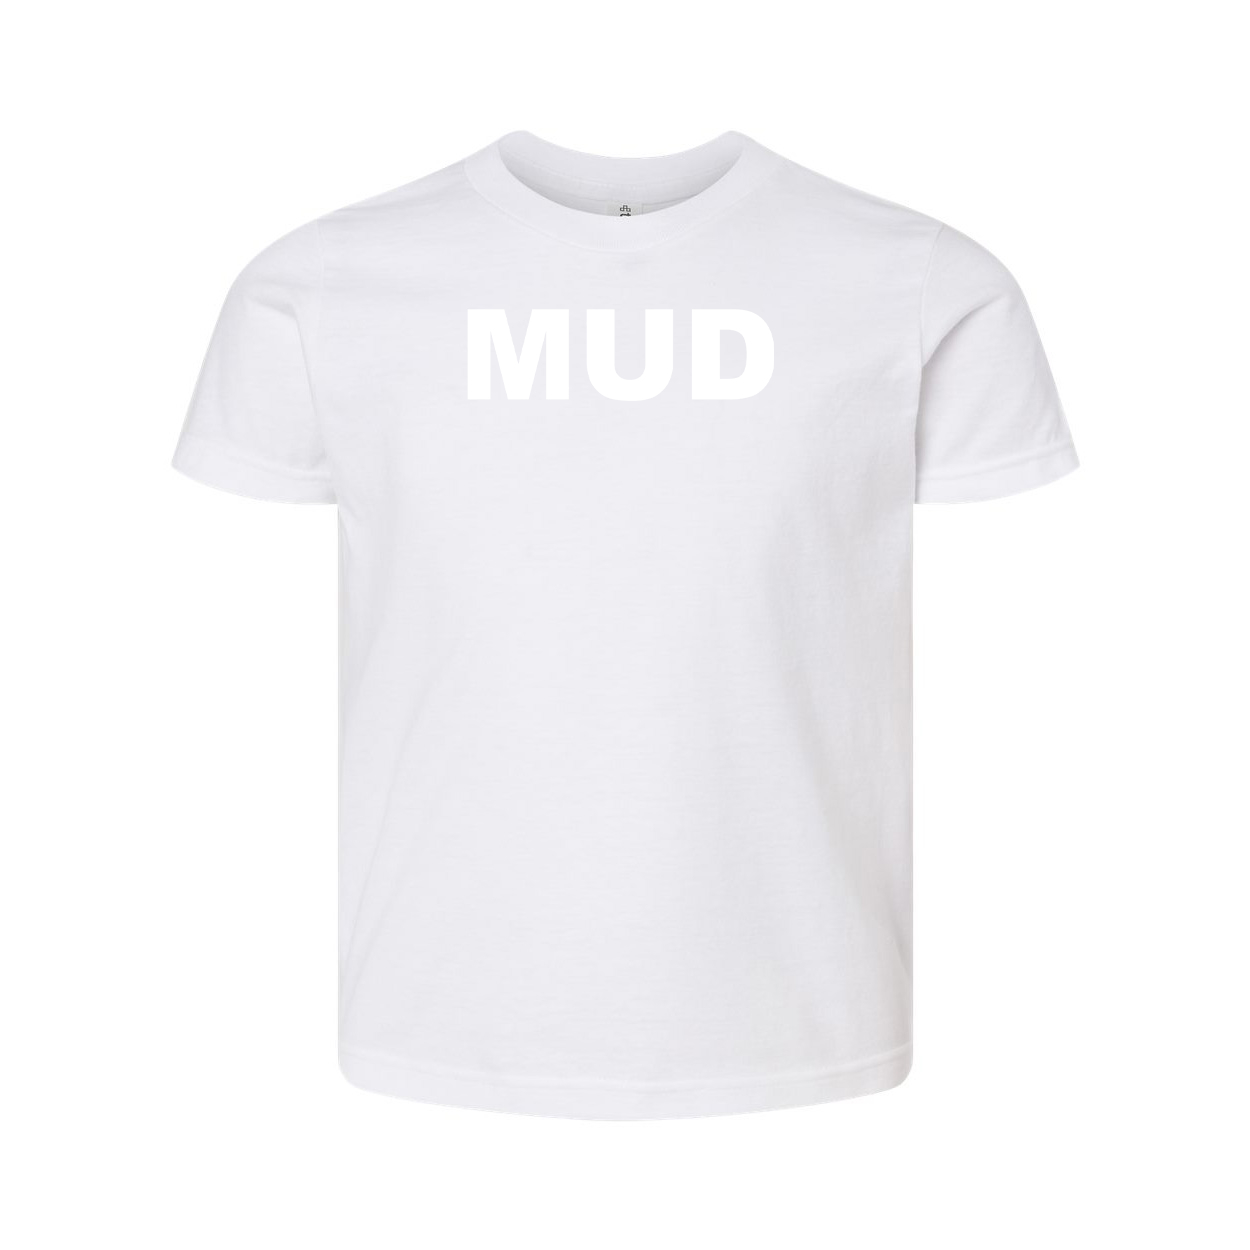 Mud Brand Logo Classic Youth T-Shirt White